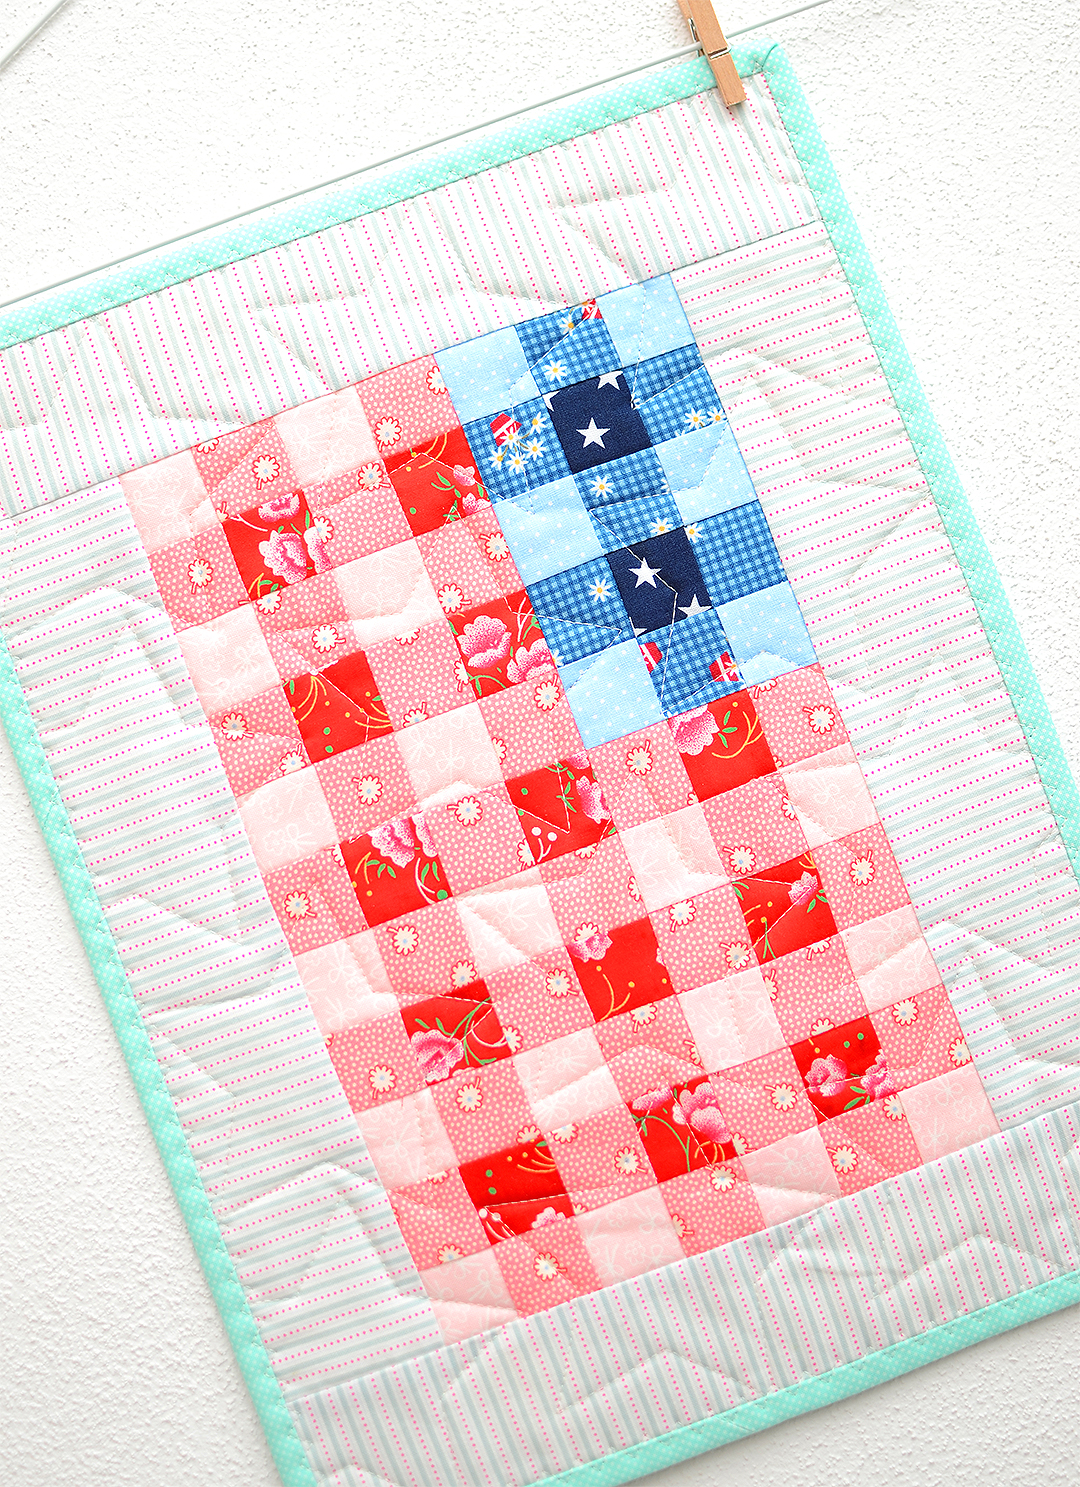 Stars & Stripes mini quilt pattern